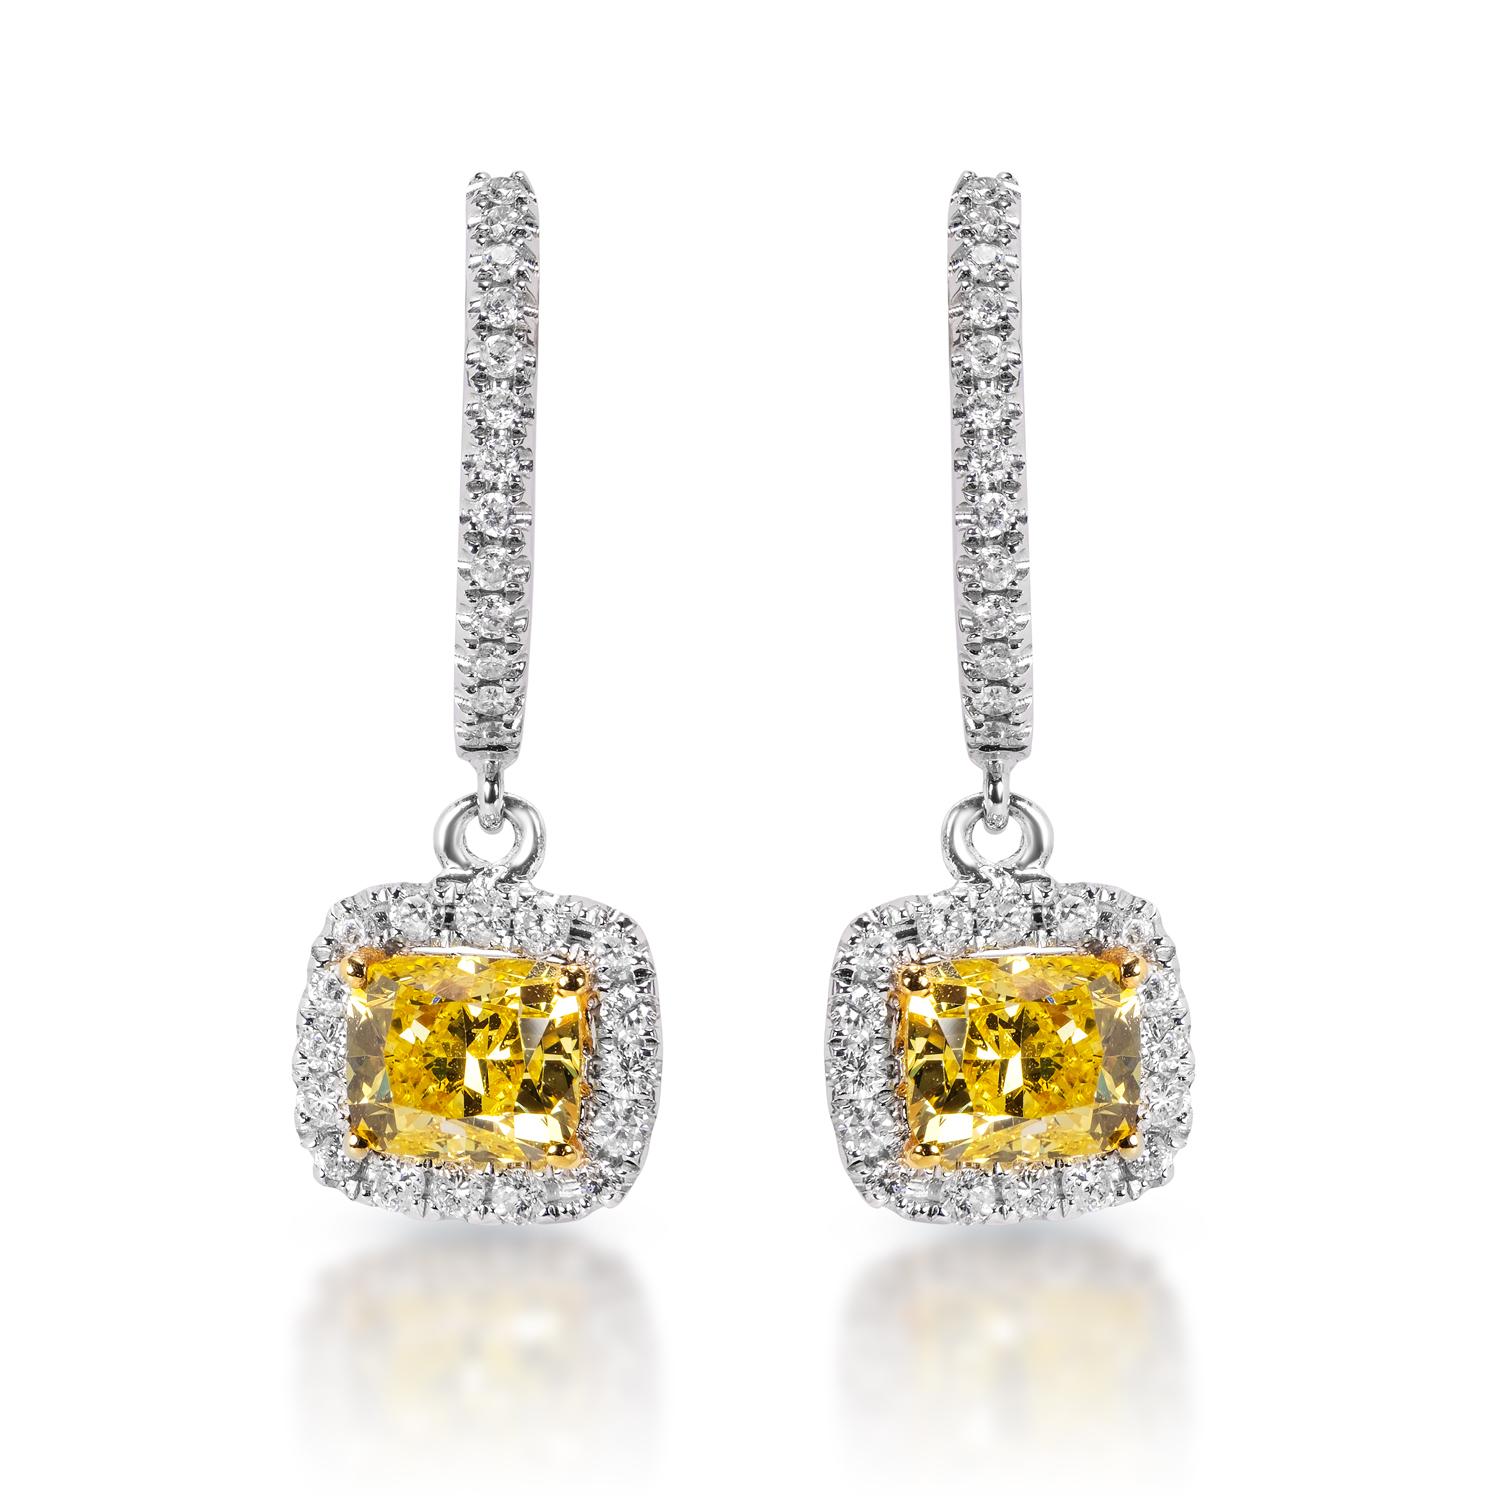 Diamant-Ohrringe für Damen mit Hebelverschluss:

Karatgewicht: 0,74 Karat 1
Form: Kissenschliff
Metall: 14KT Weißgold
Stil: Lever Back Ohrringe